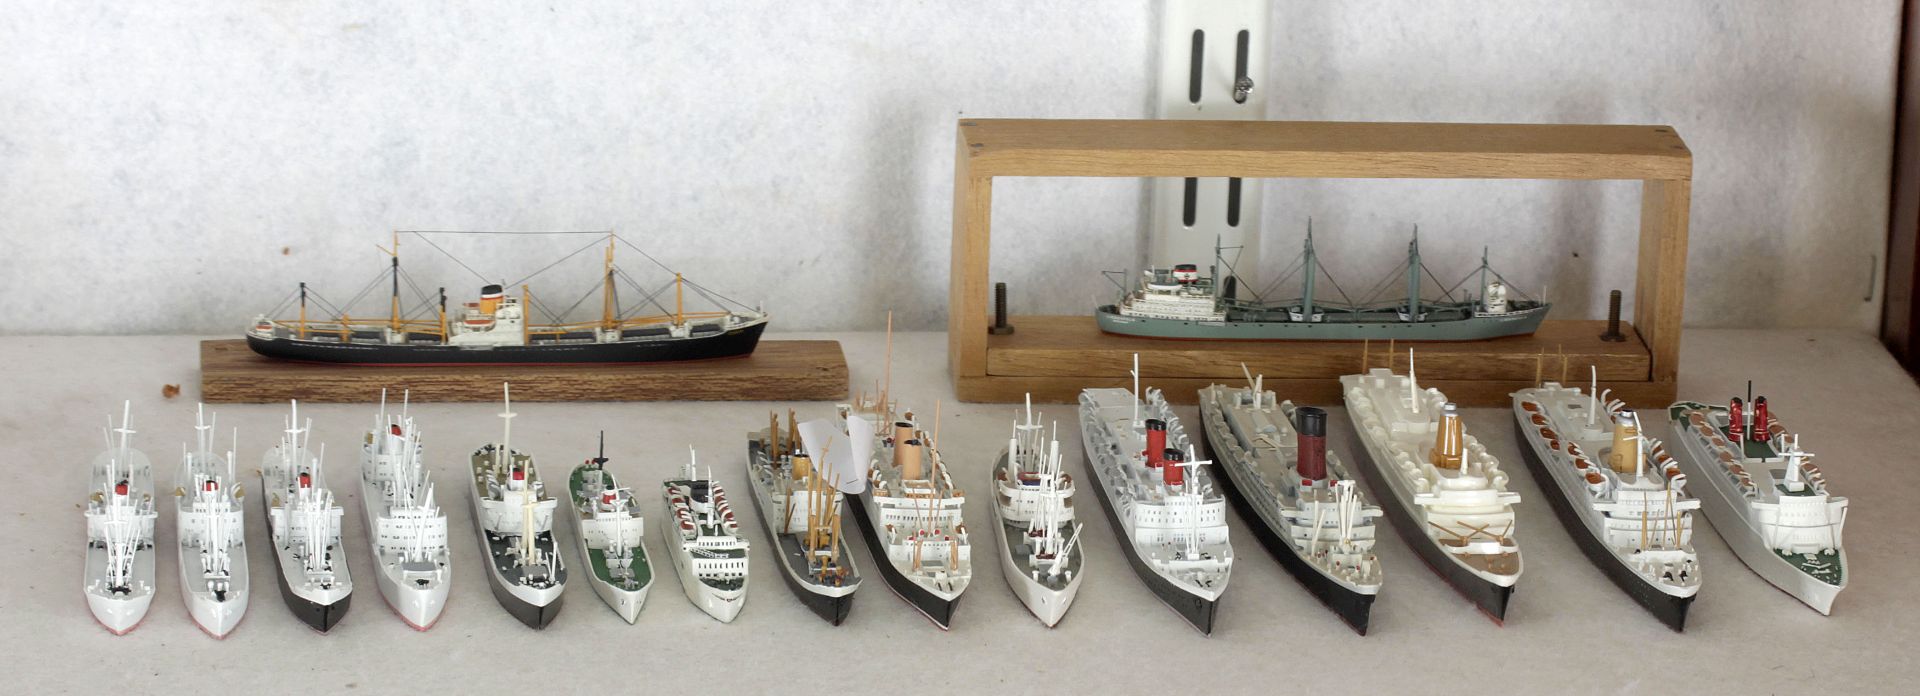 16 Metallschiffsmodelle, deutsche Handelsschiffe der 1950er-70er Jahre